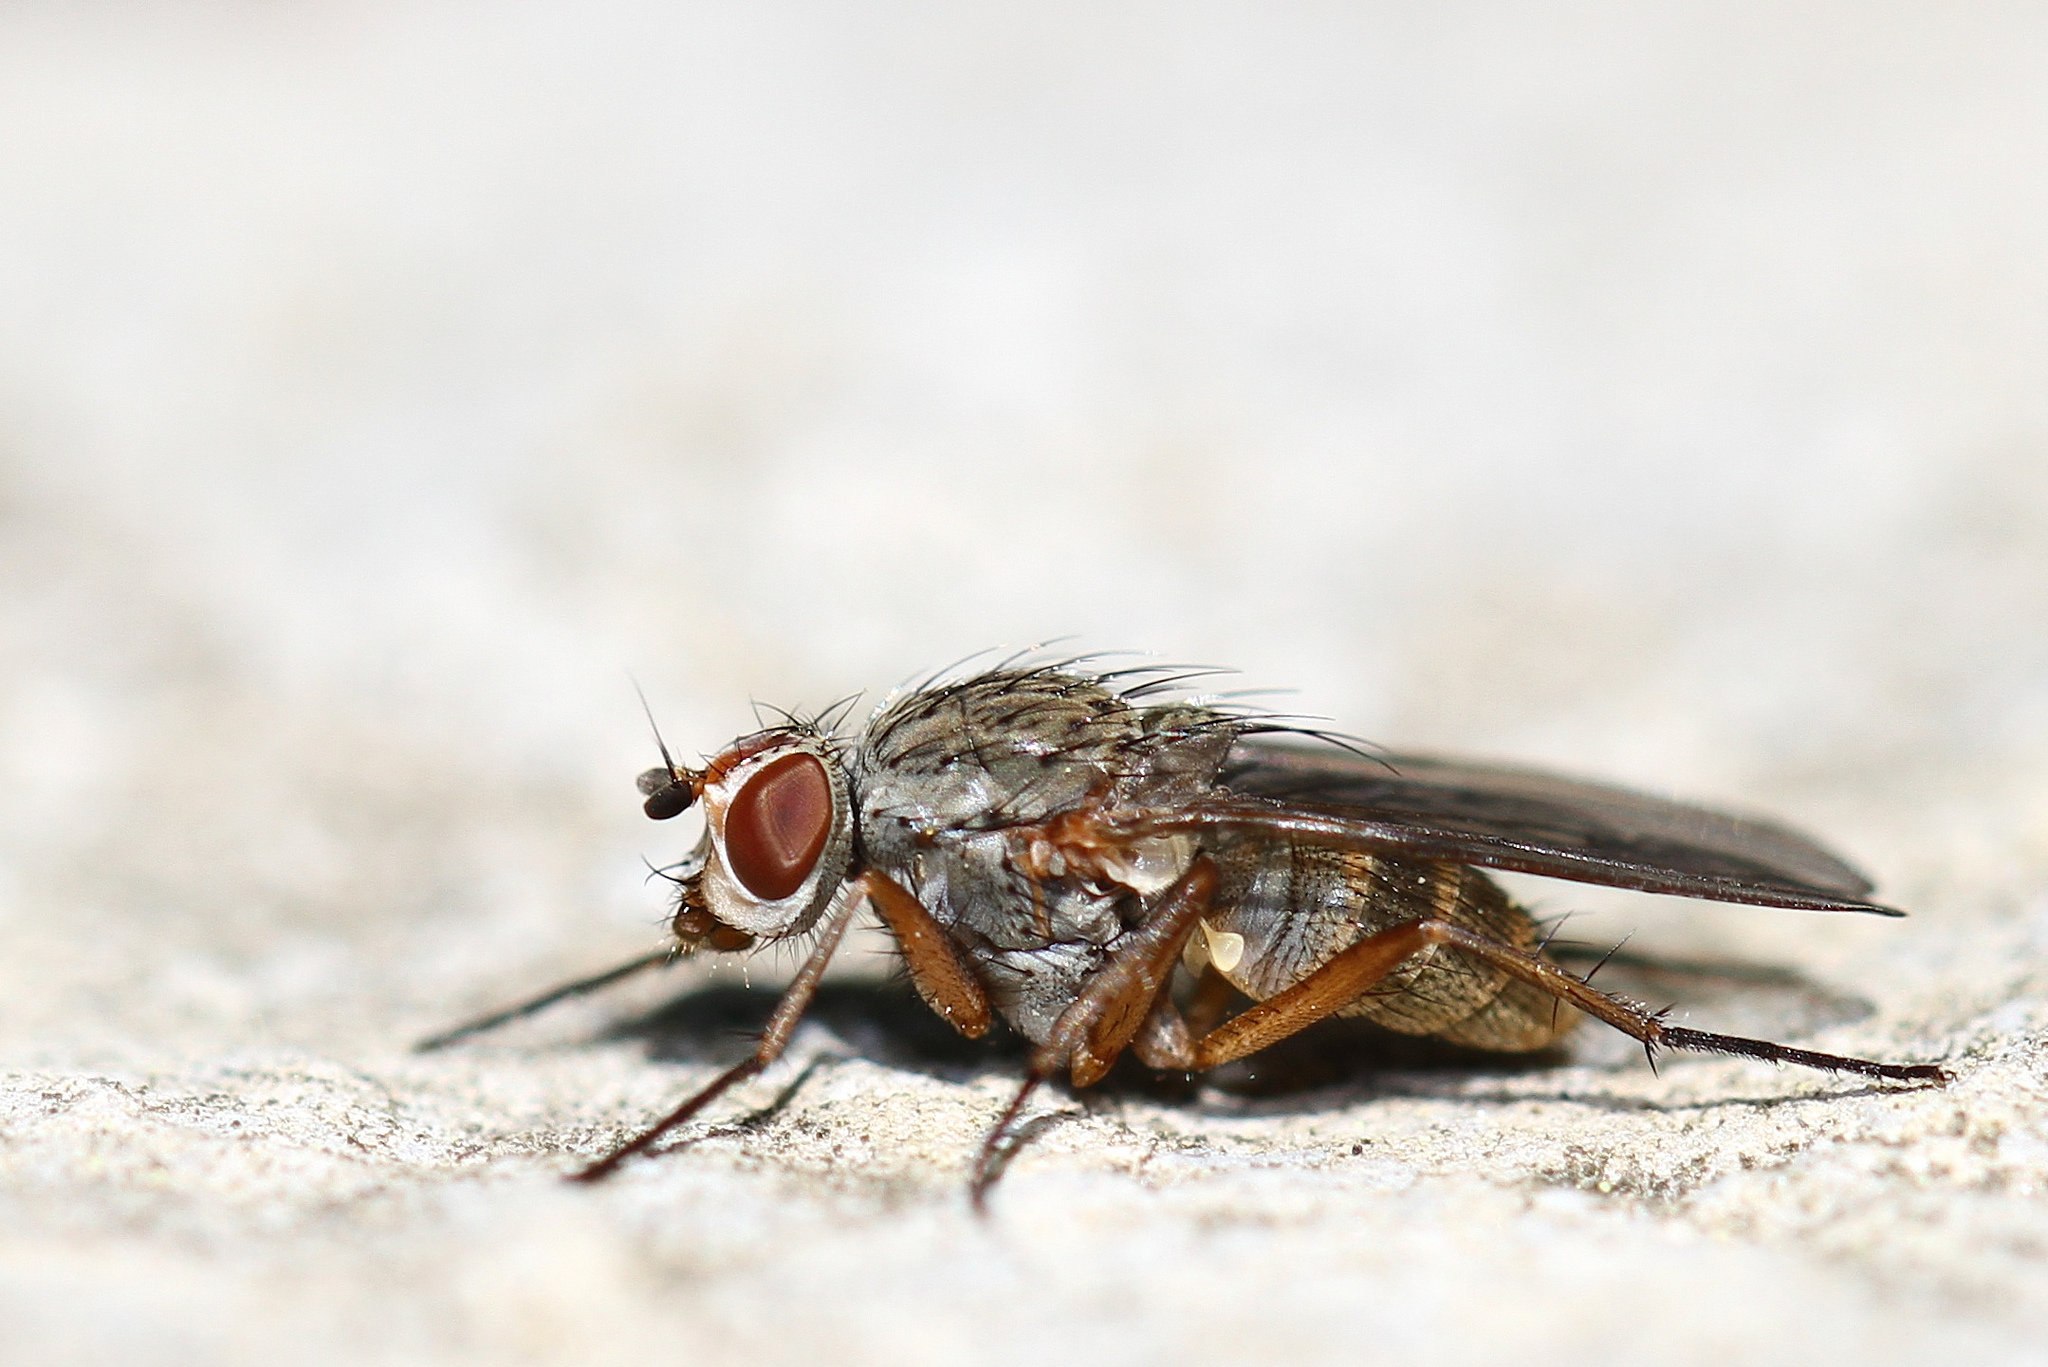 Сон муха большая. Муха жигалка. Муха под микроскопом. Спортивная Муха. Муха жигалка фото.